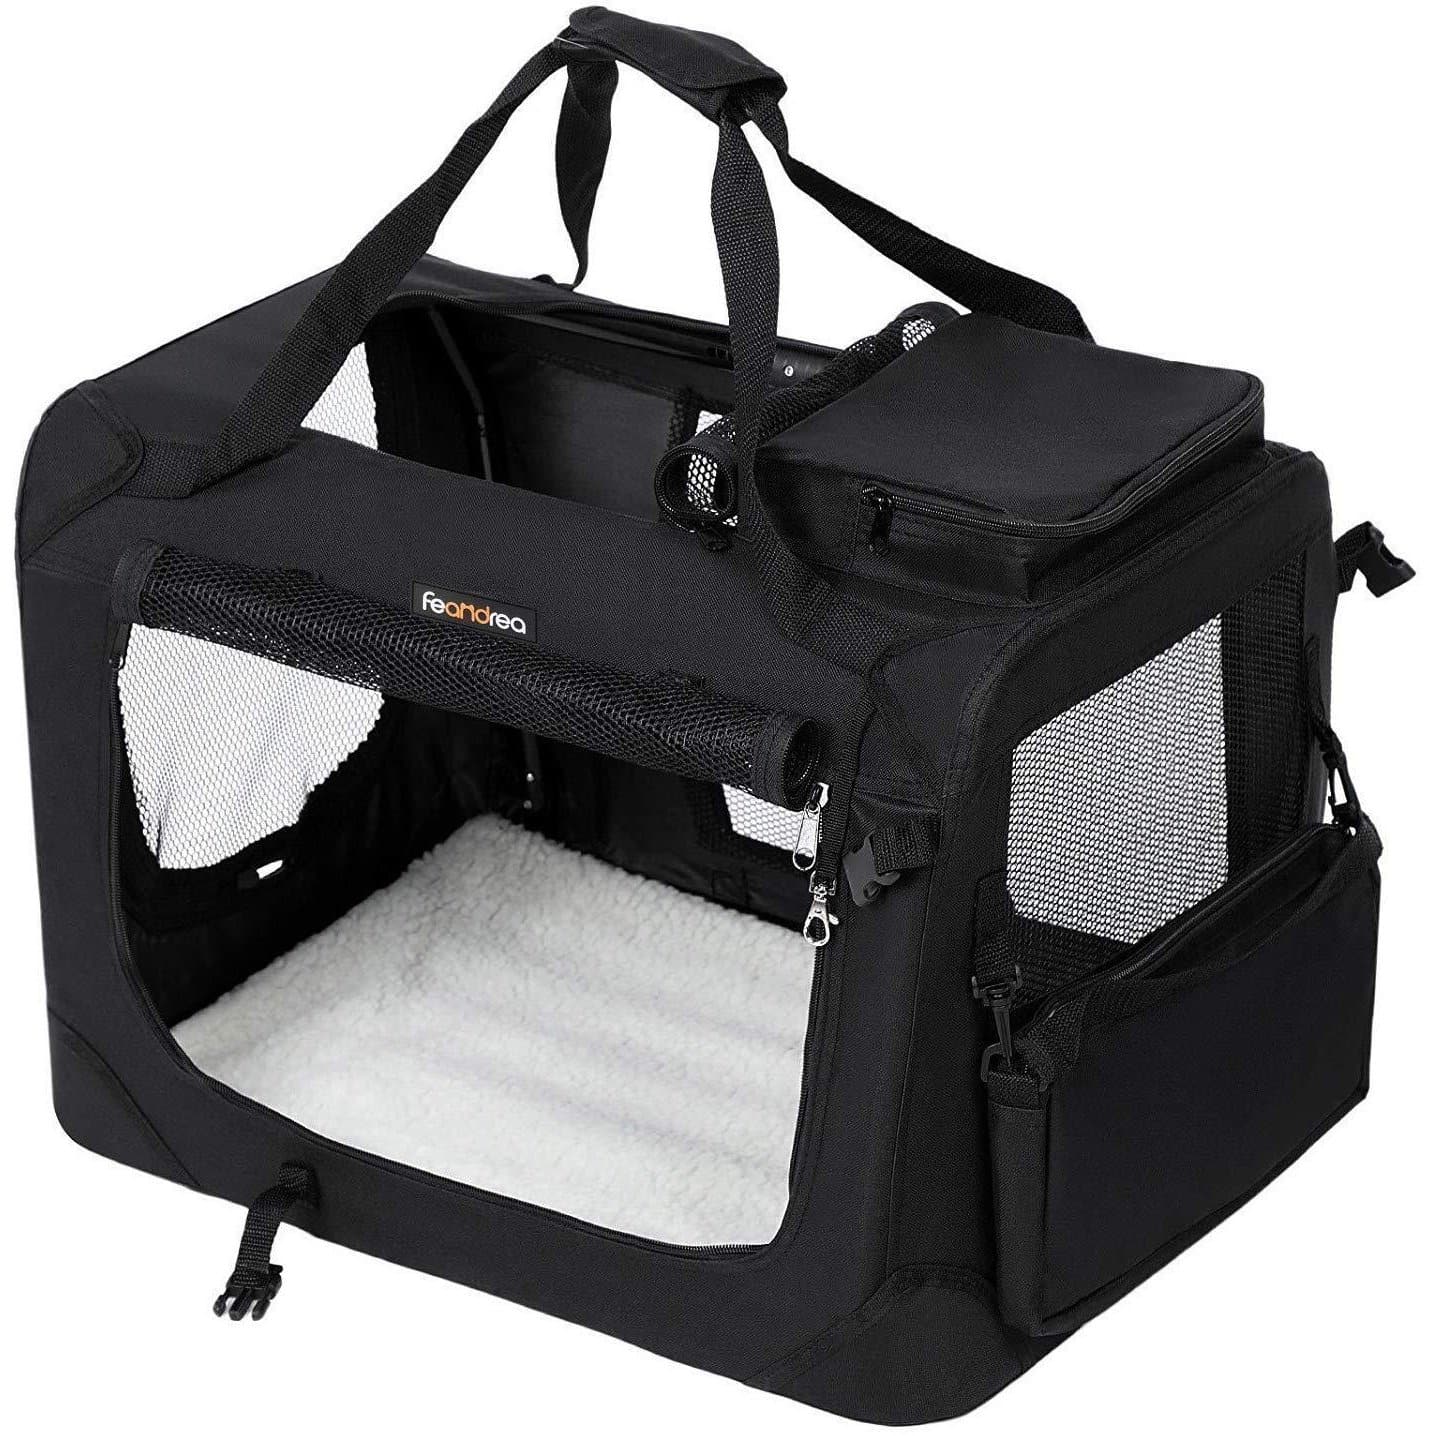 Nancy's Carrier Bag for Animals - Dog Bag - Sac de voyage pour chiens - Dog Box - Sac de transport pour chats - 60 x 40 x 40 cm